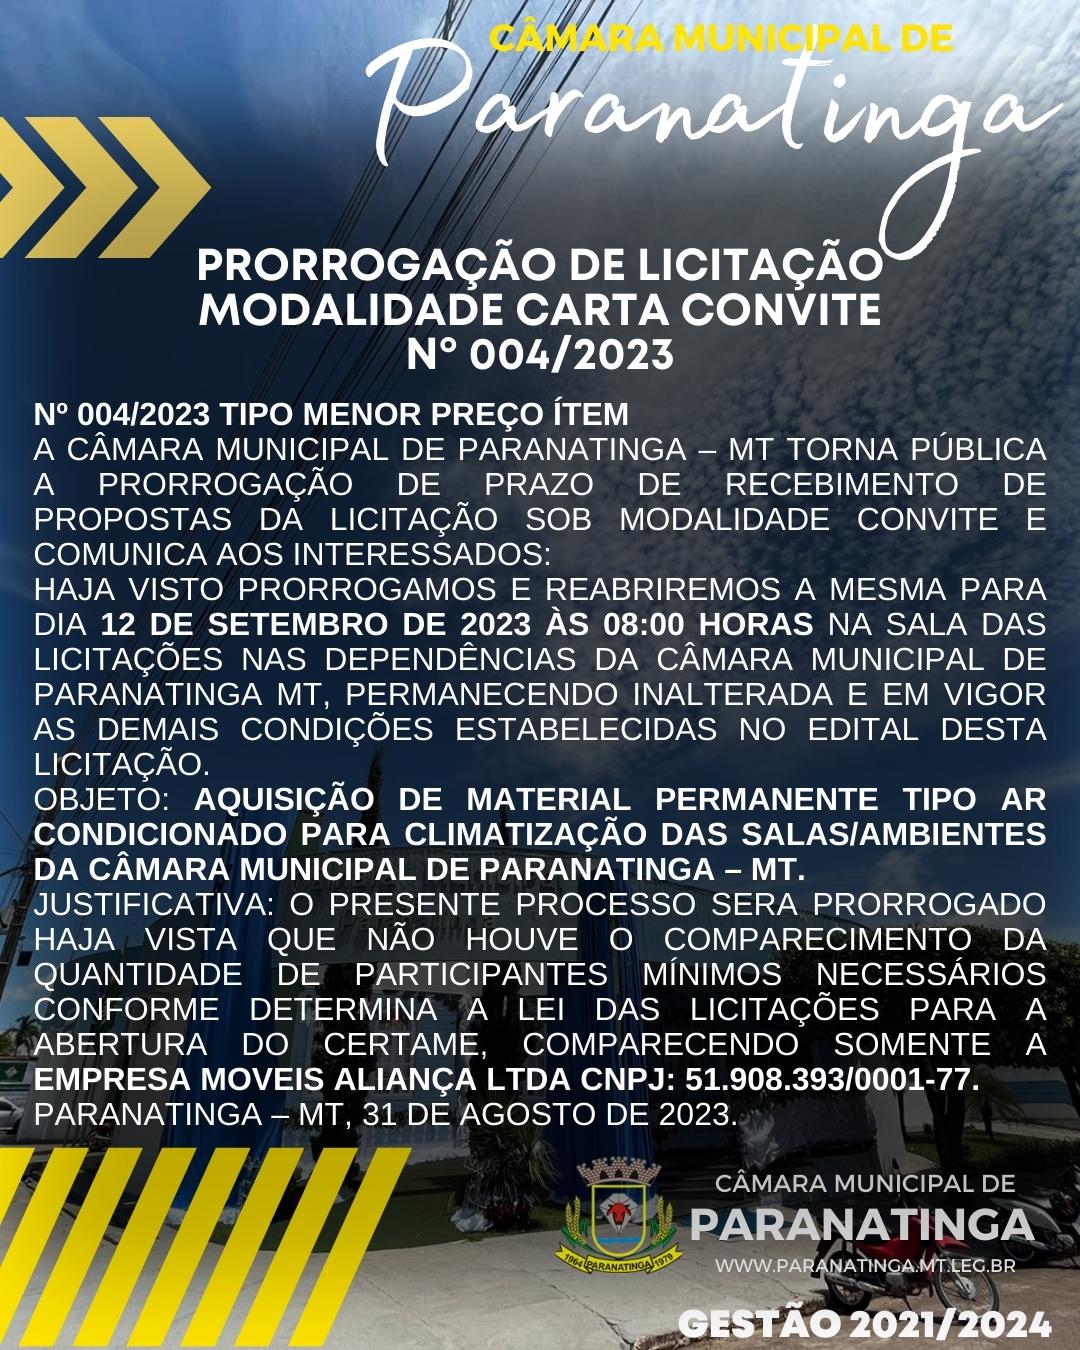 PRORROGAÇÃO DE LICITAÇÃO MODALIDADE CARTA CONVITE Nº 004/2023